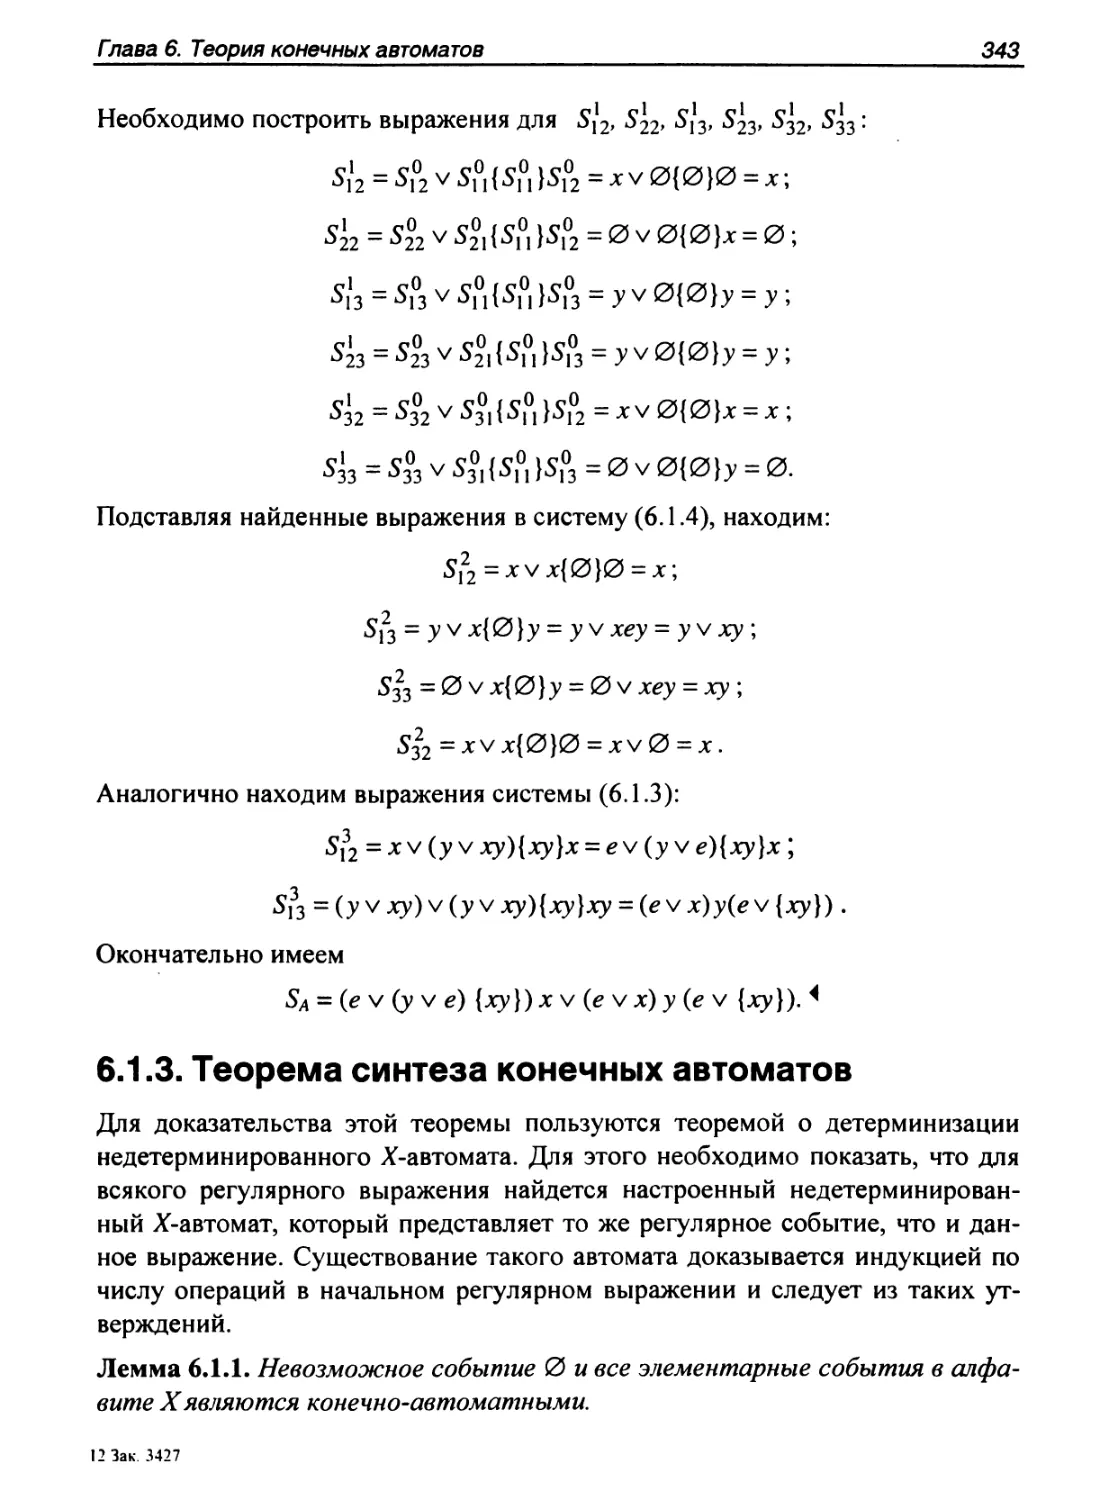 6.1.3. Теорема синтеза конечных автоматов